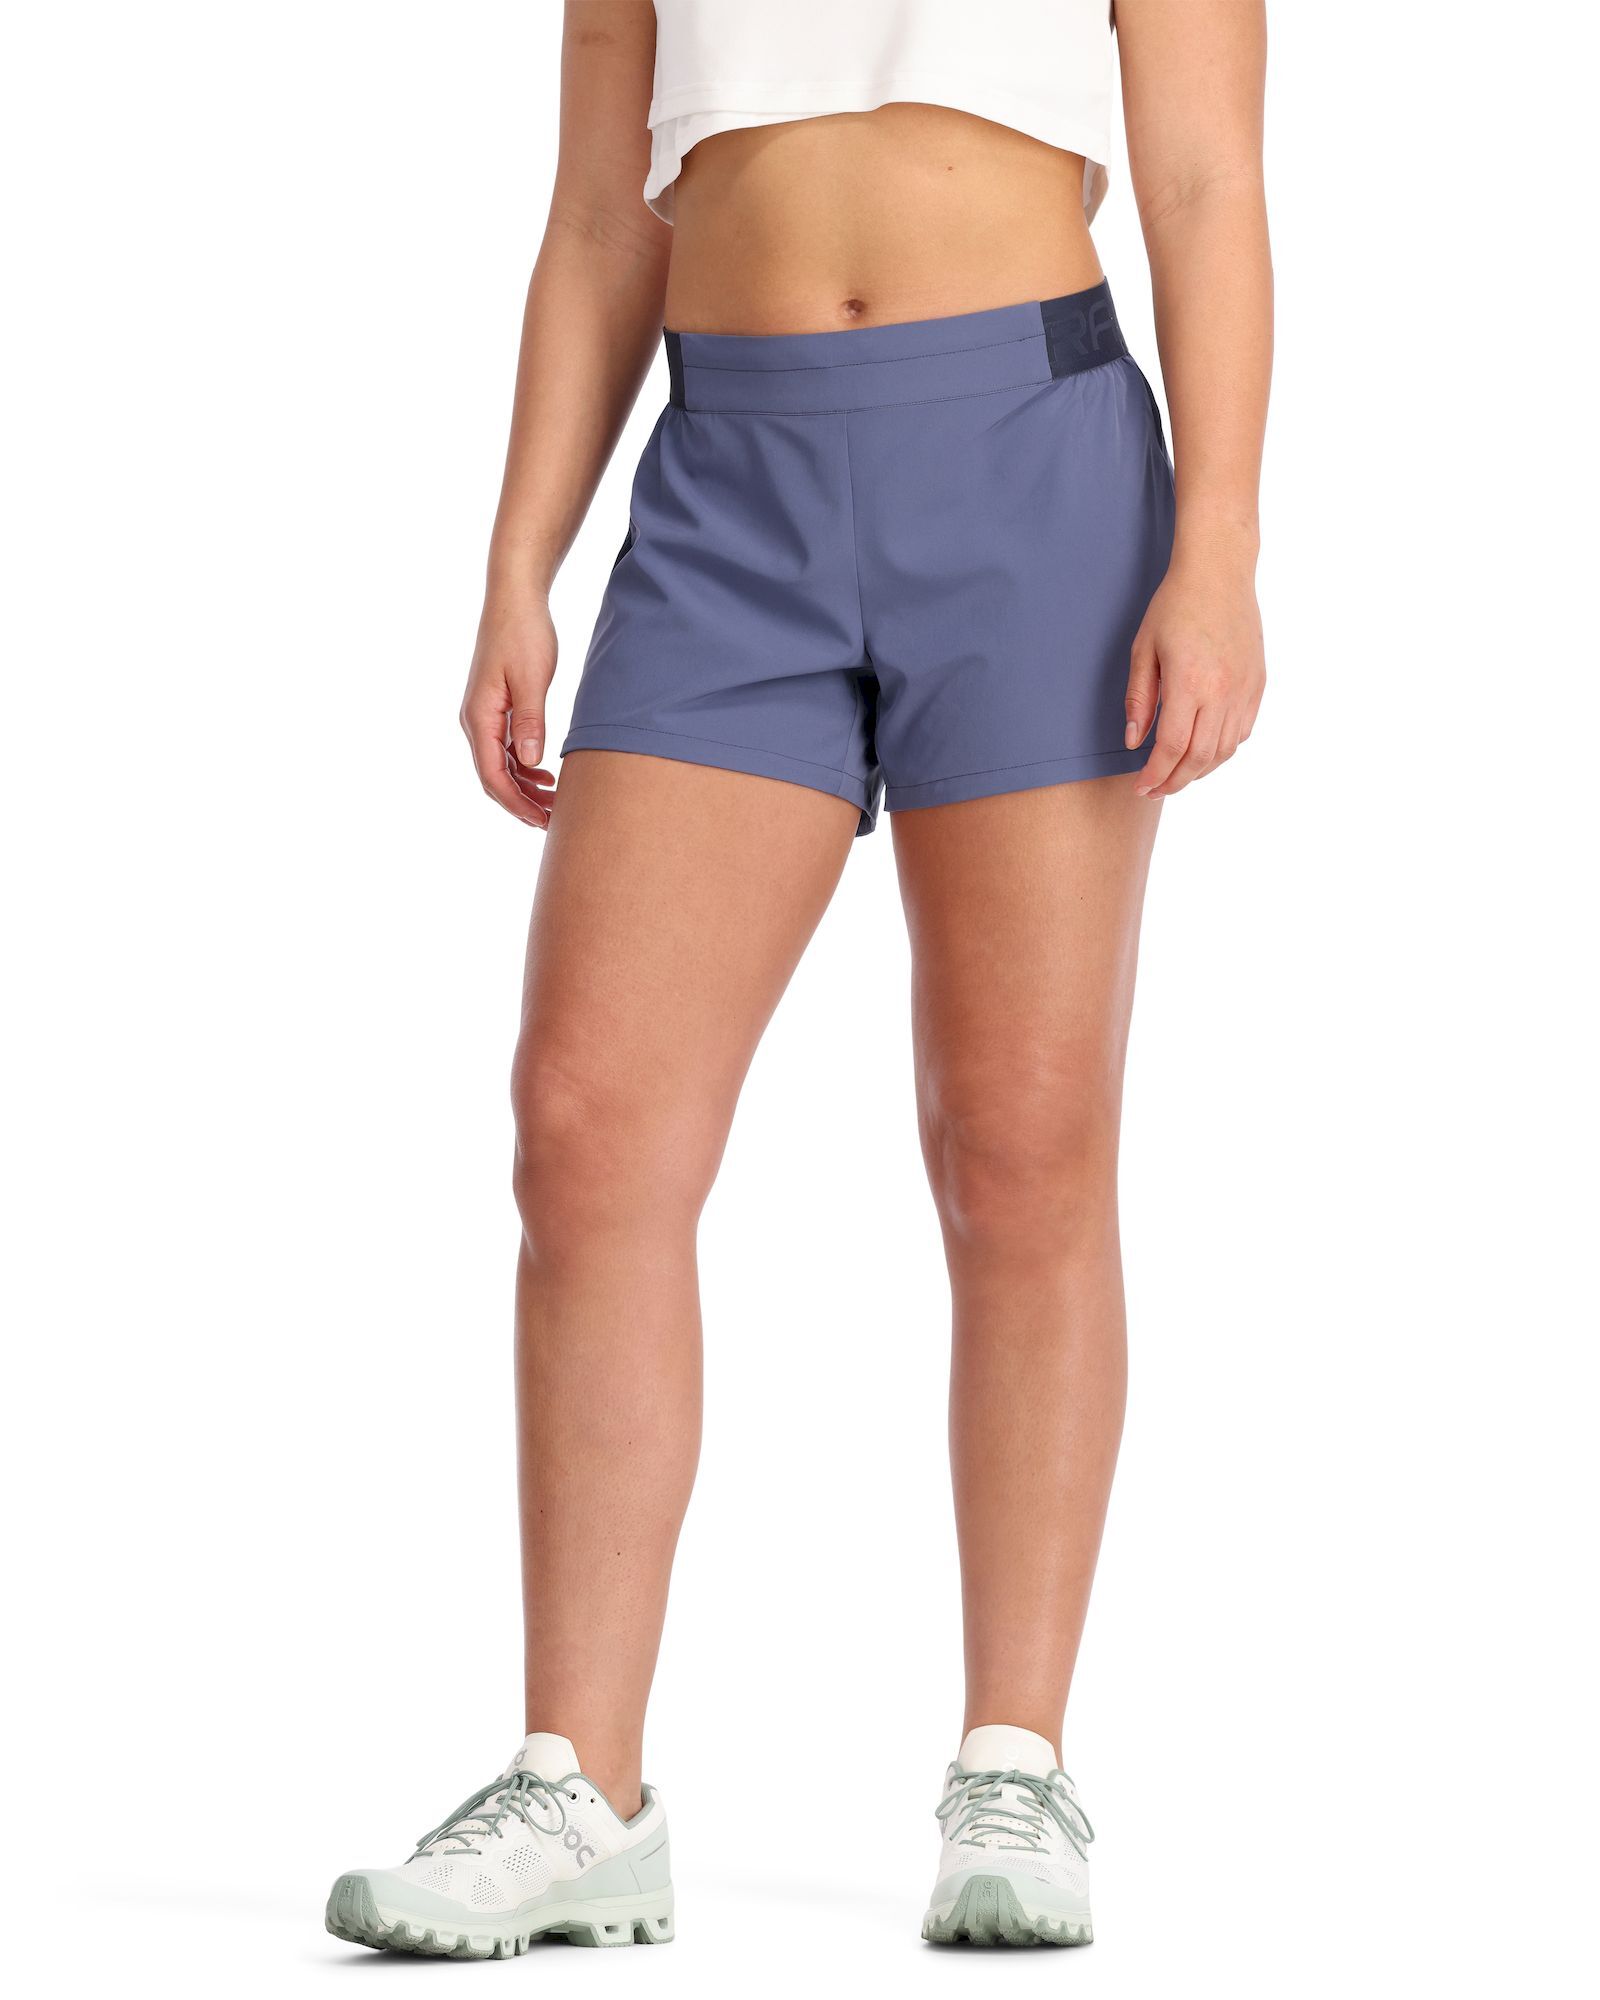 Kari Traa Nora 2.0 Shorts 4 inch - Pantaloncini da trail running - Donna | Hardloop